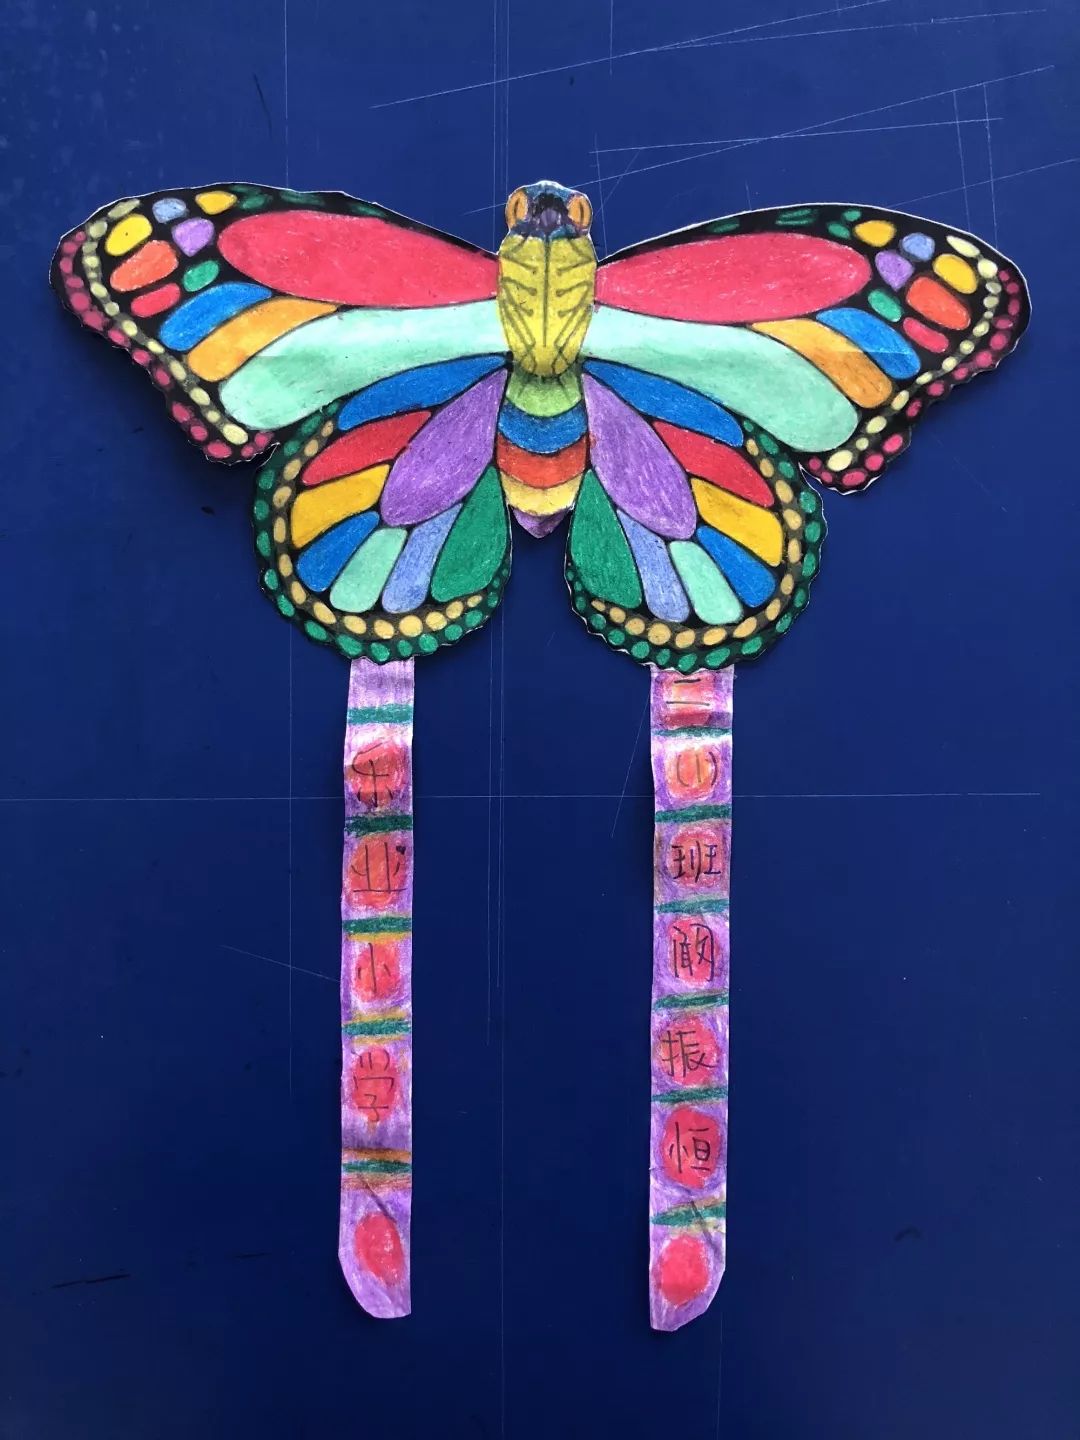 奇思妙想 ——2018乐业小学校园科技节之树叶剪贴画,纸风筝设计比赛